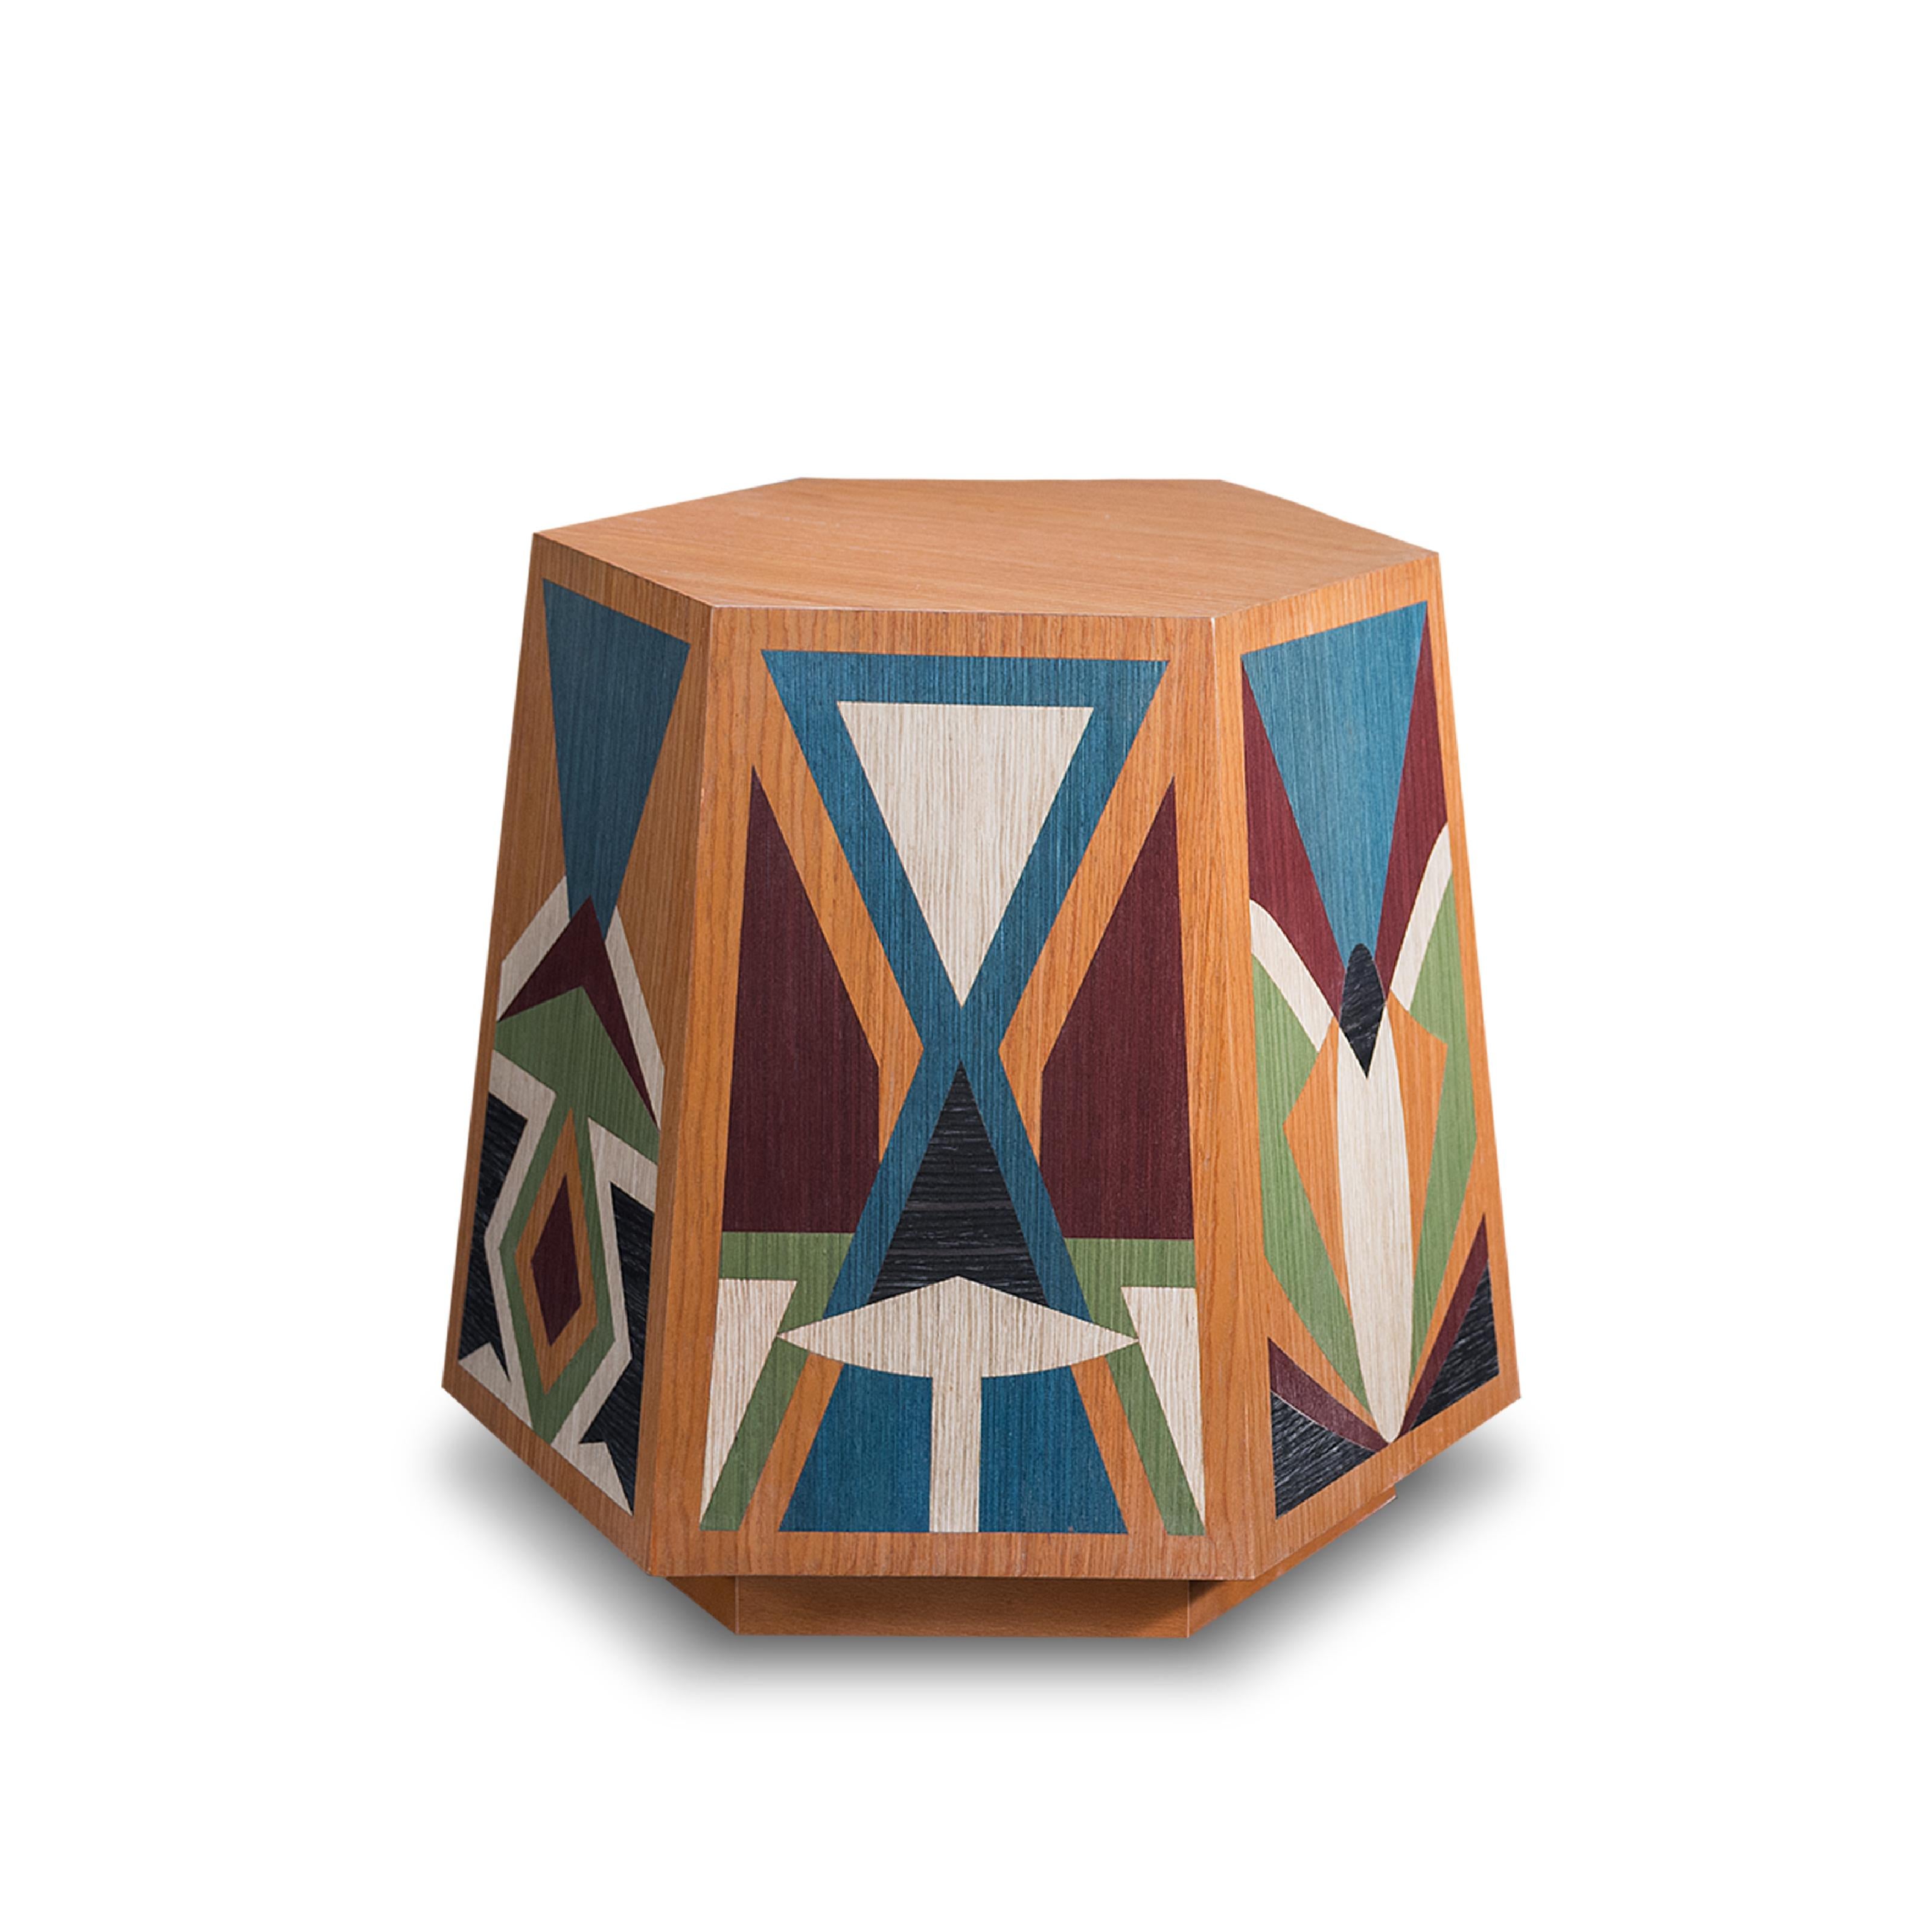 Der sechseckige Hocker ist von Karim Atayas verschlungenen islamischen Mustern inspiriert und verkörpert geometrische Eleganz und spirituelle Symbolik. Sorgfältig gearbeitete Muster zieren jede Seite, schaffen ein harmonisches Gleichgewicht und